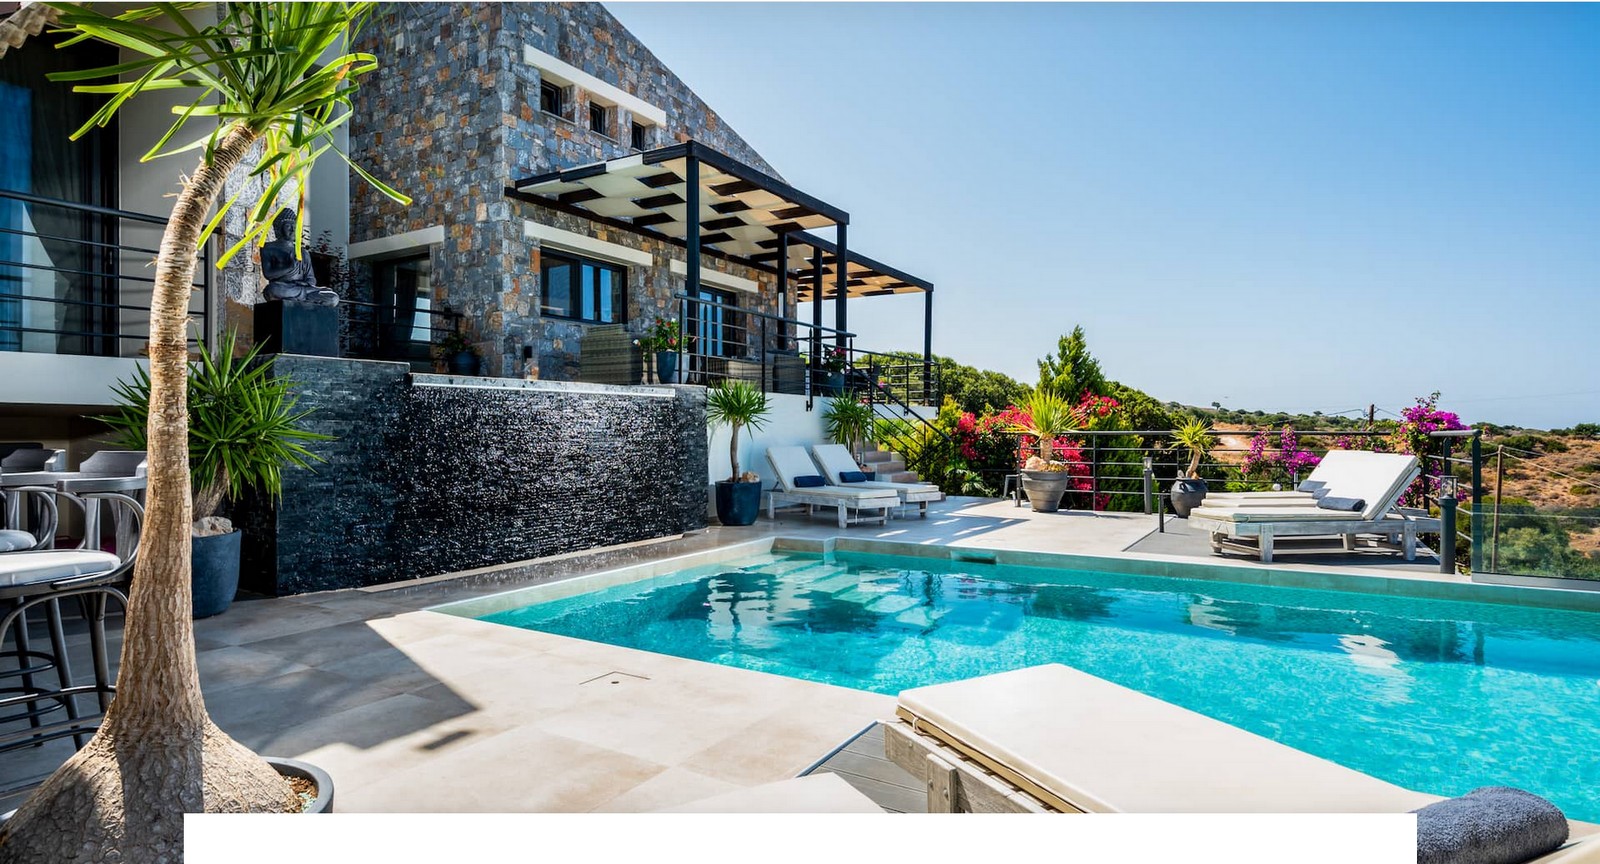 Geweldige villa met prachtig uitzicht op zee 350m2 en privézwembad.